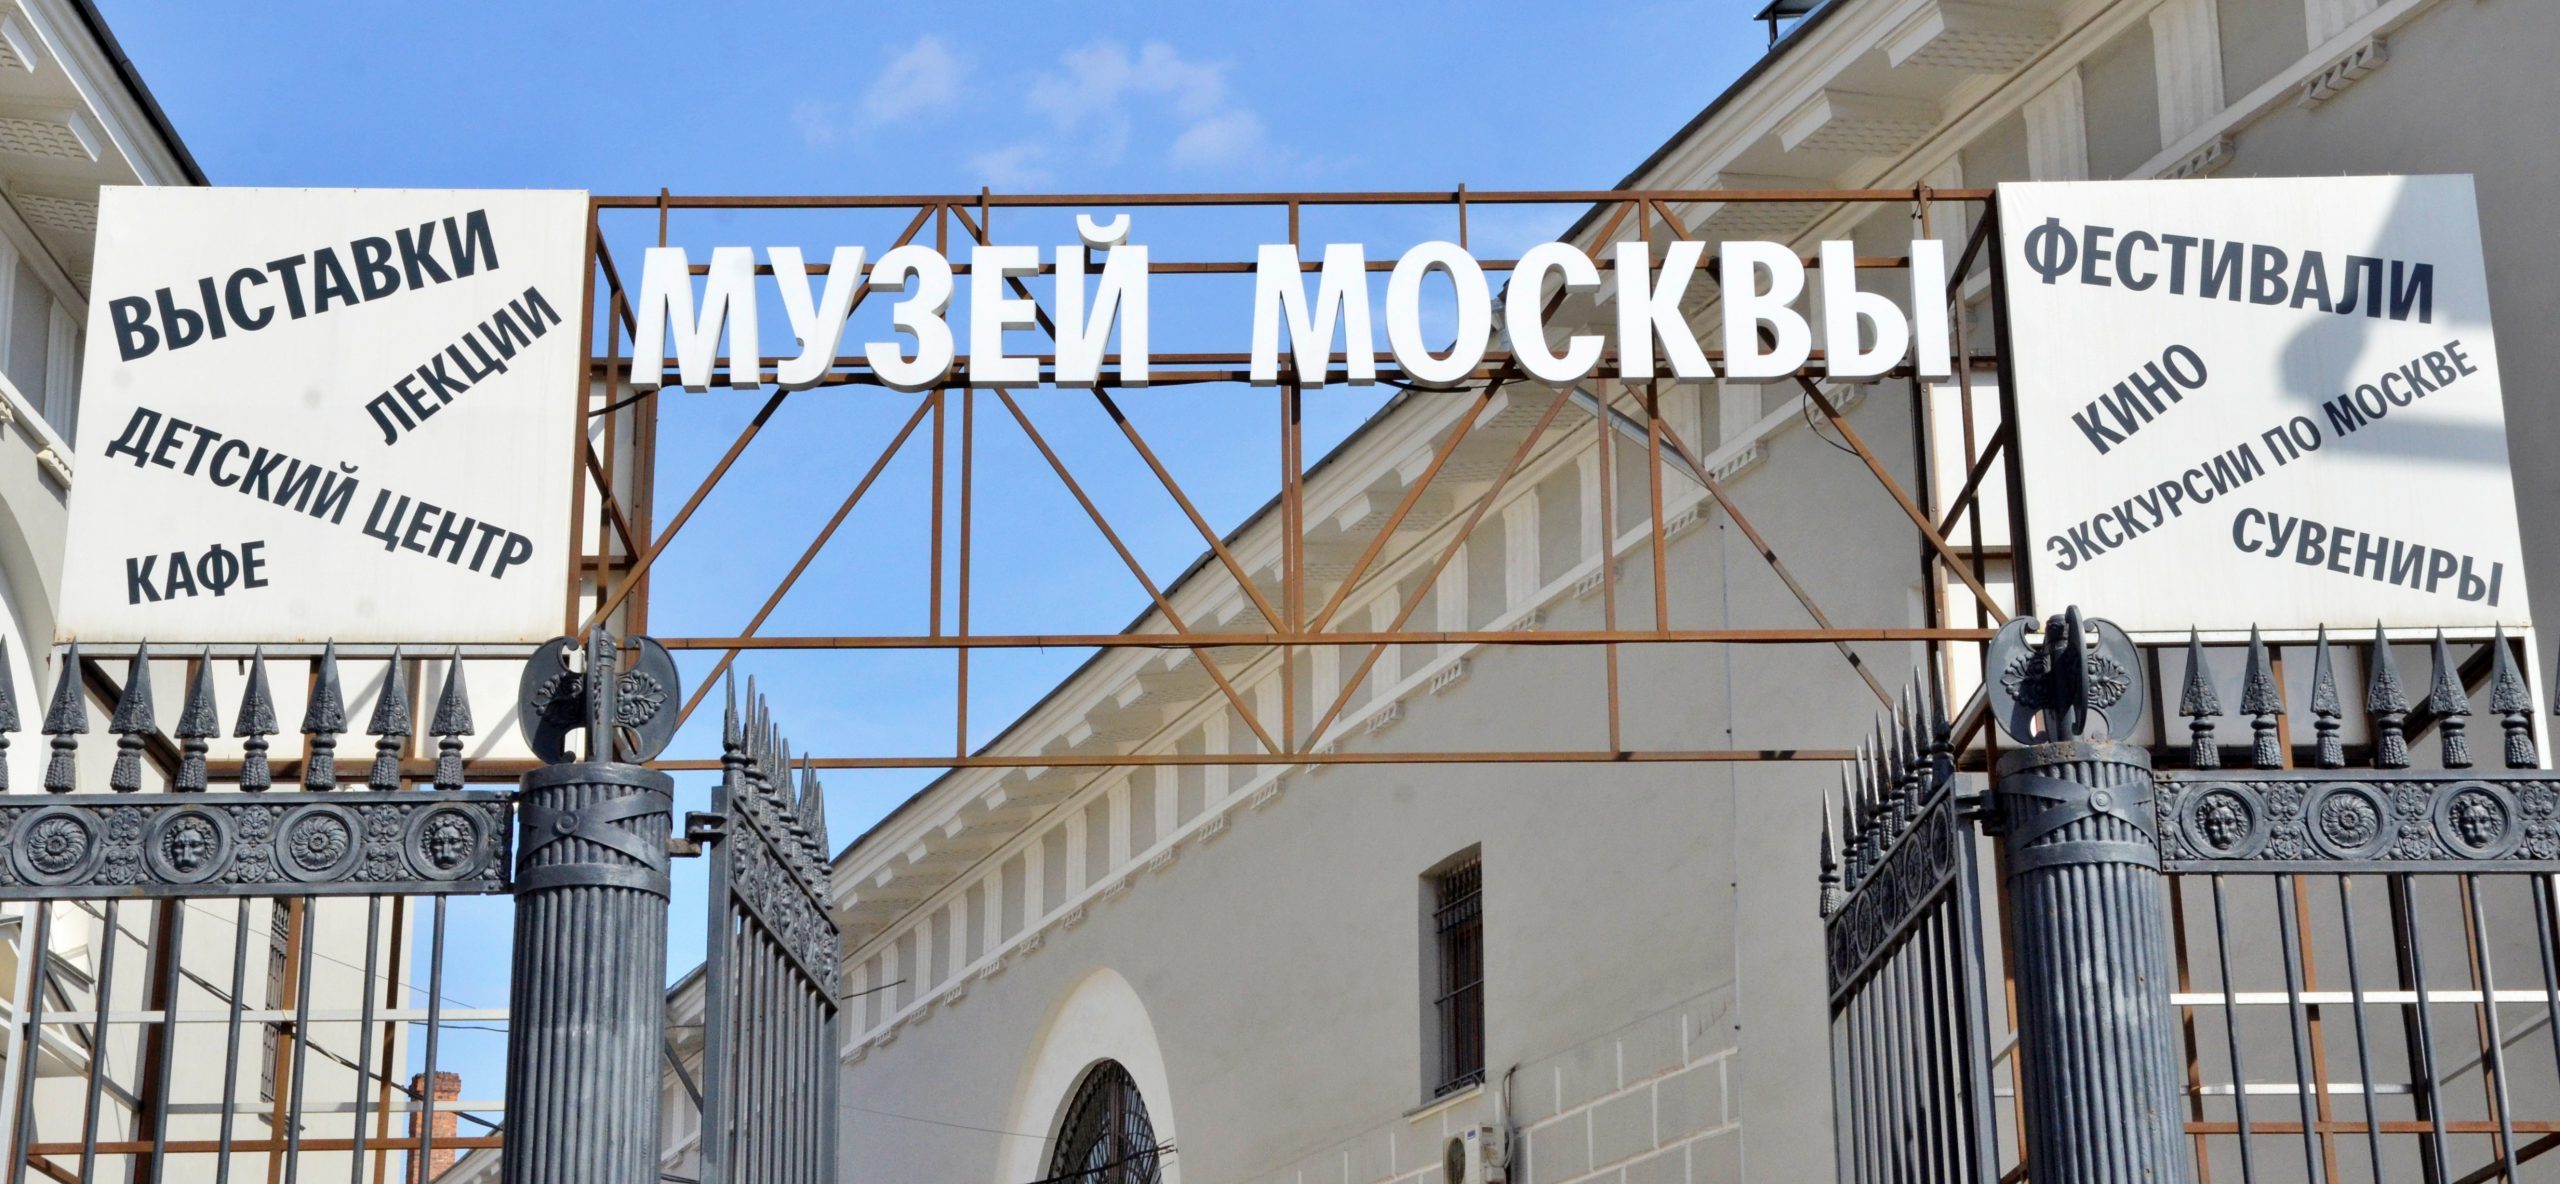 Музей Москвы подготовил развлекательную программу в честь юбилея. Фото: Анна Быкова